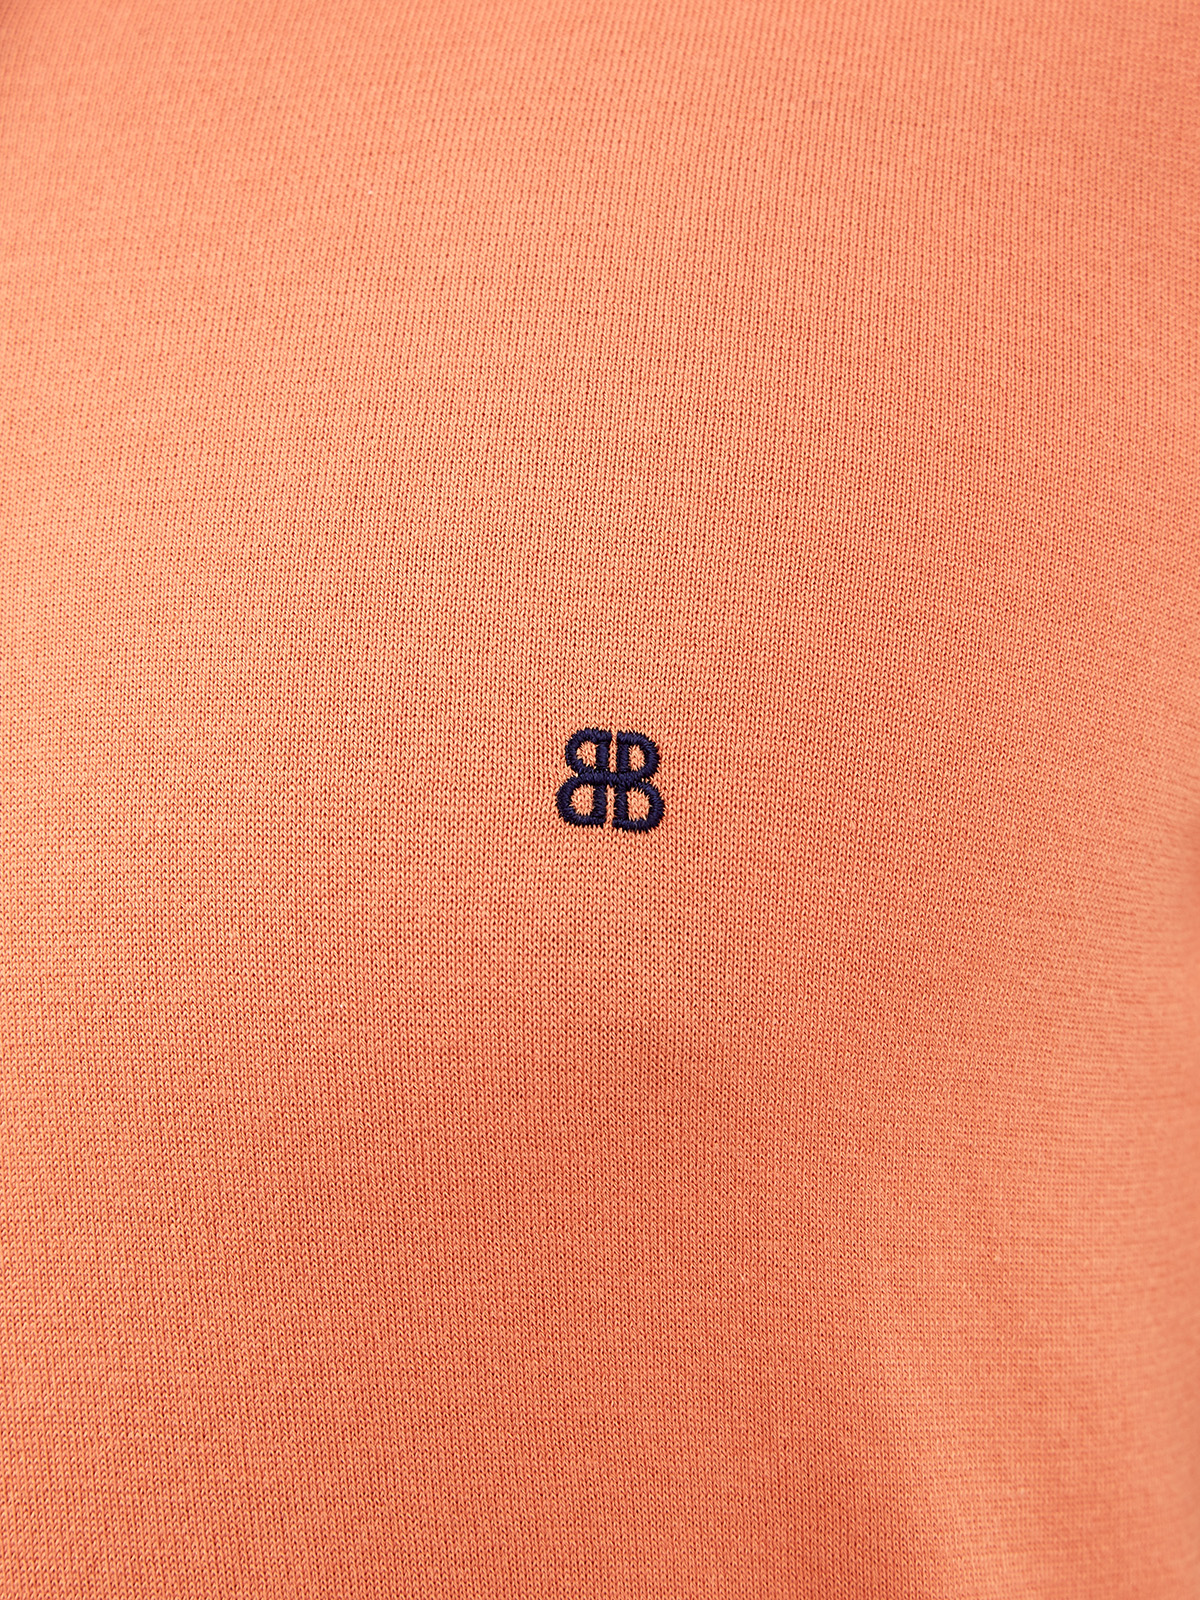 Поло из хлопка и шелка с вышитым логотипом BERTOLO CASHMERE, цвет мульти, размер 50;52;56;58;48 - фото 5